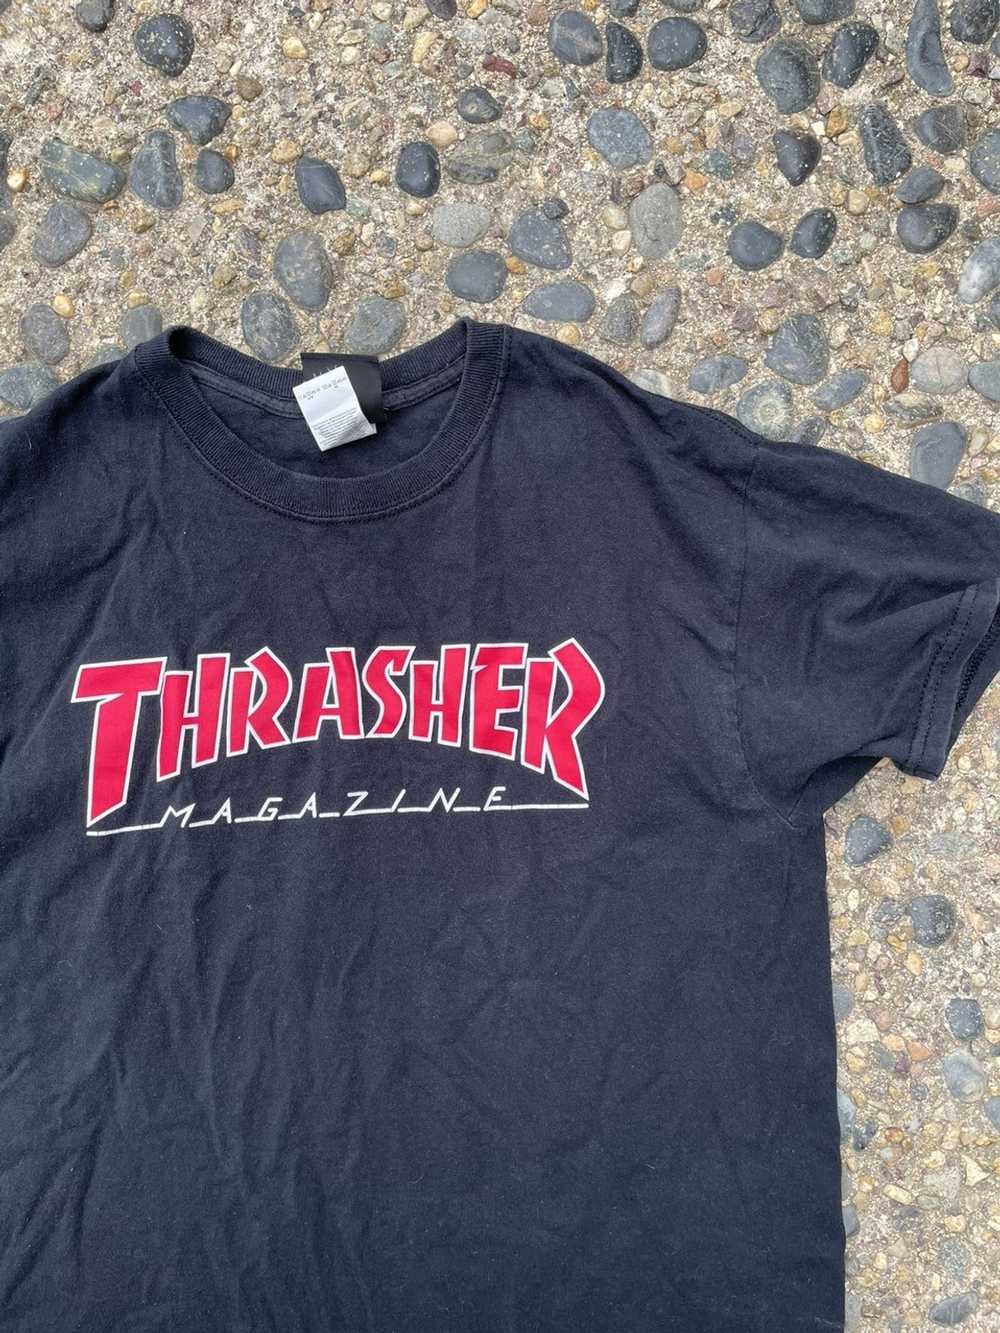 Thrasher Thrasher magazine - image 2